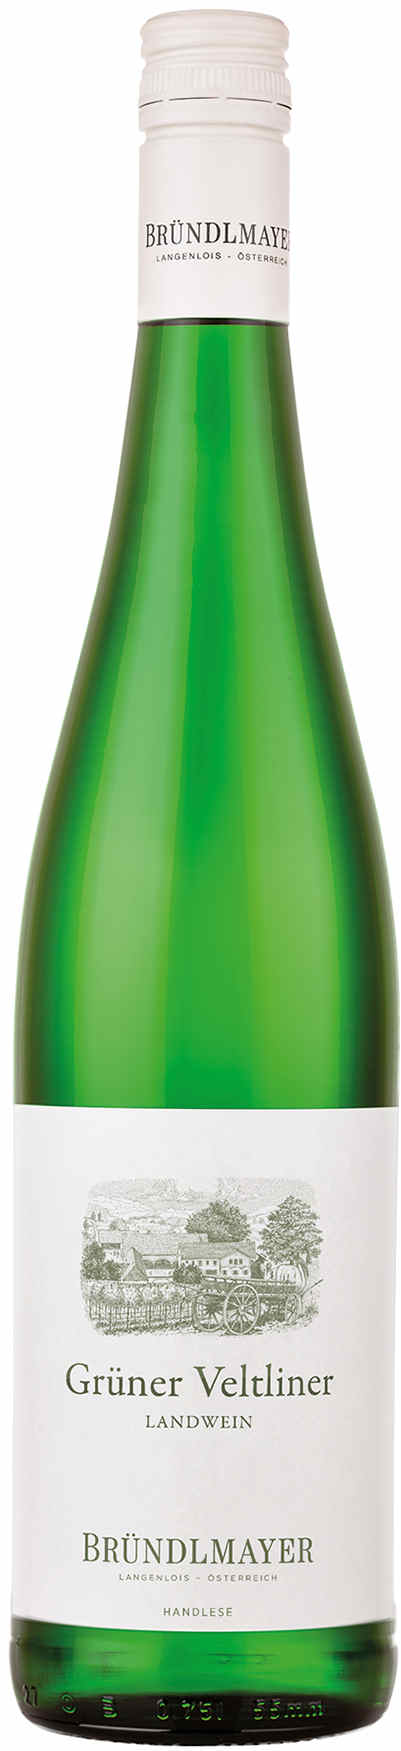 Weingut Bründlmayer Grüner Veltliner Landwein | 2021 | trocken | Weißwein |  Vinoscout